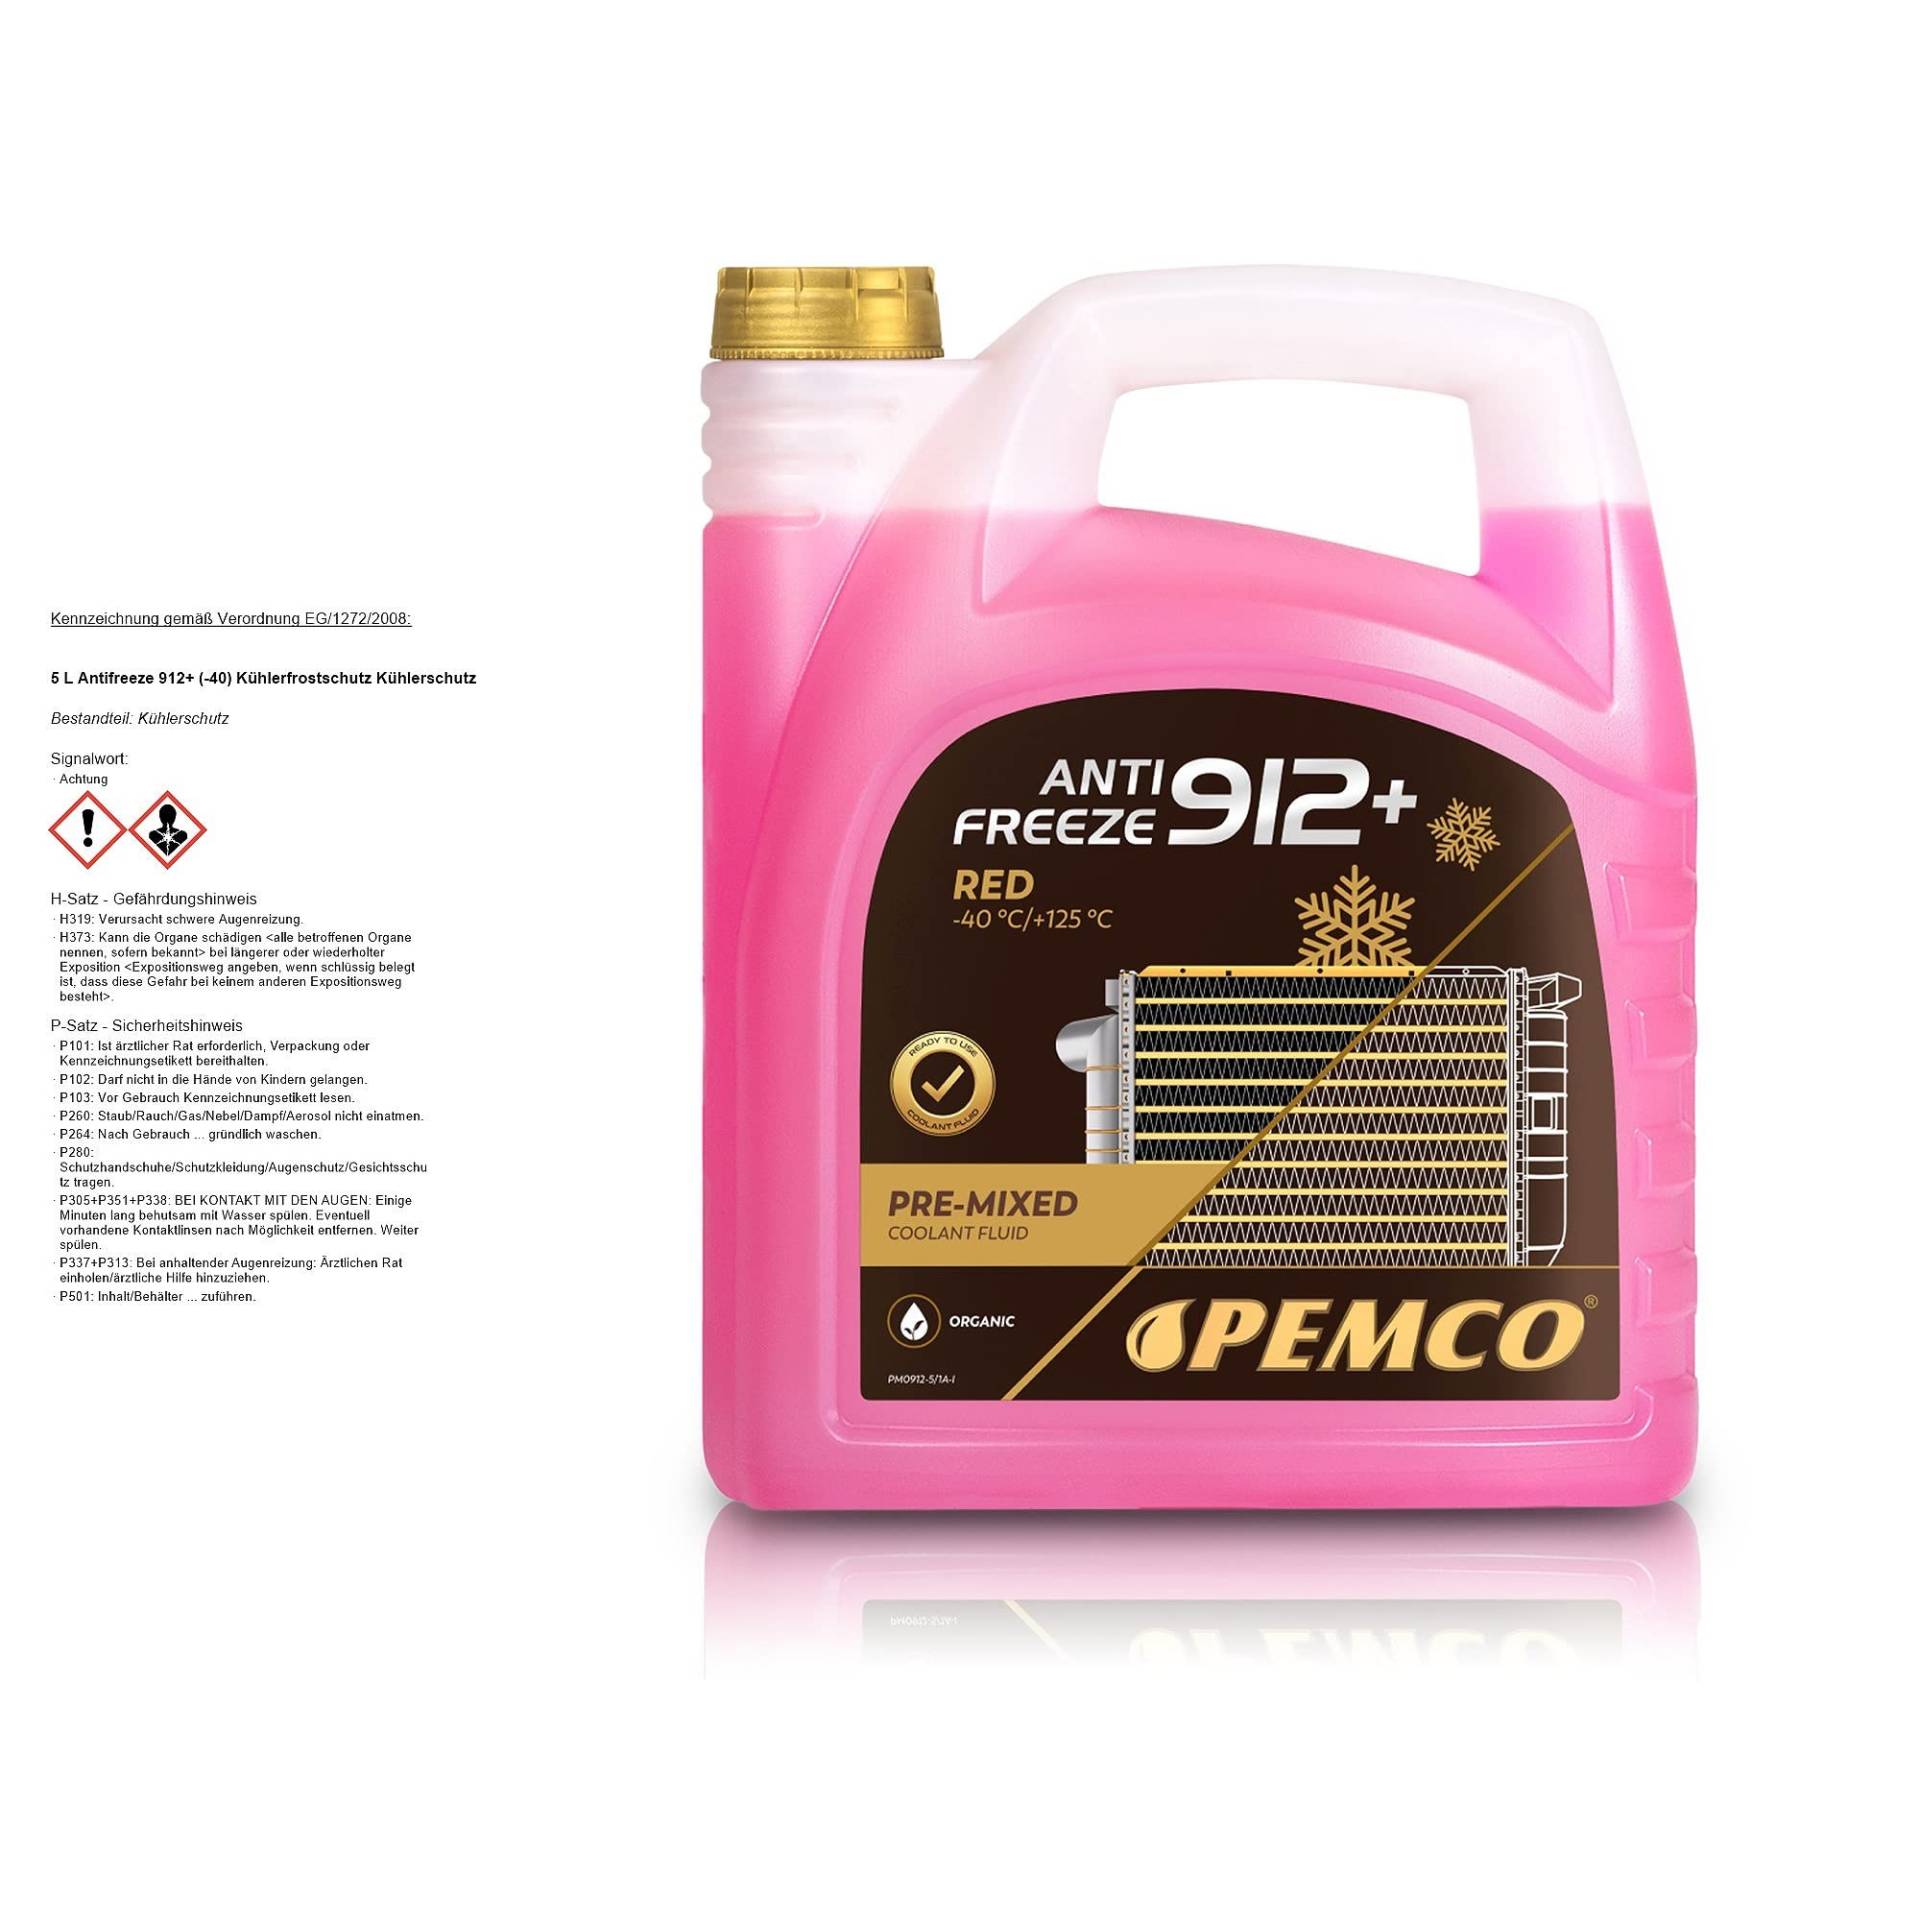 Pemco Kühlerfrostschutz Antifreeze 912+ ROT -40°C, 5 Liter von Pemco